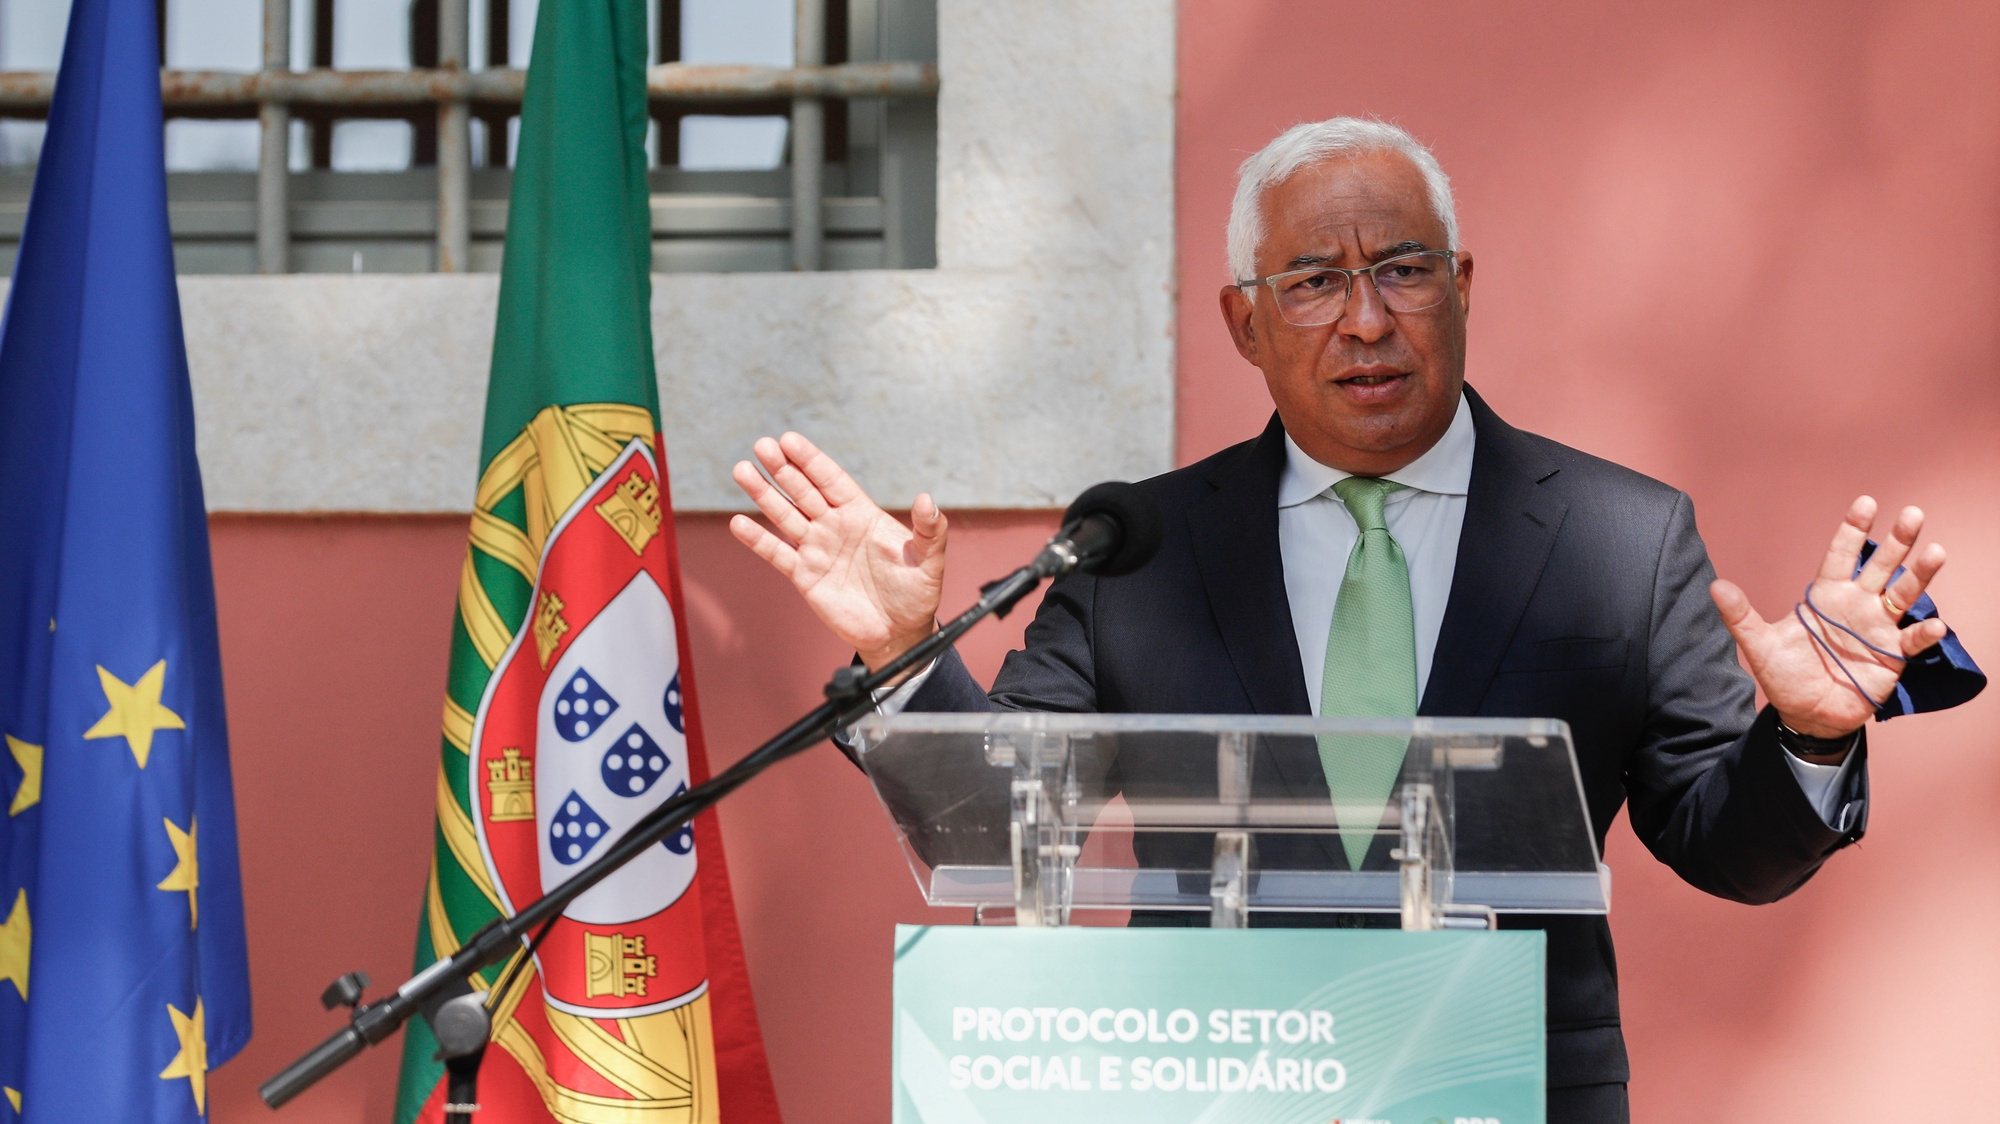 O primeiro-ministro, António Costa, discursa durante a cerimónia de assinatura do Protocolo do Setor Social e Solidário no âmbito da implementação do Plano de Recuperação e Resiliência (PRR), Lisboa, 21 de julho de 2021. ANTÓNIO COTRIM/LUSA